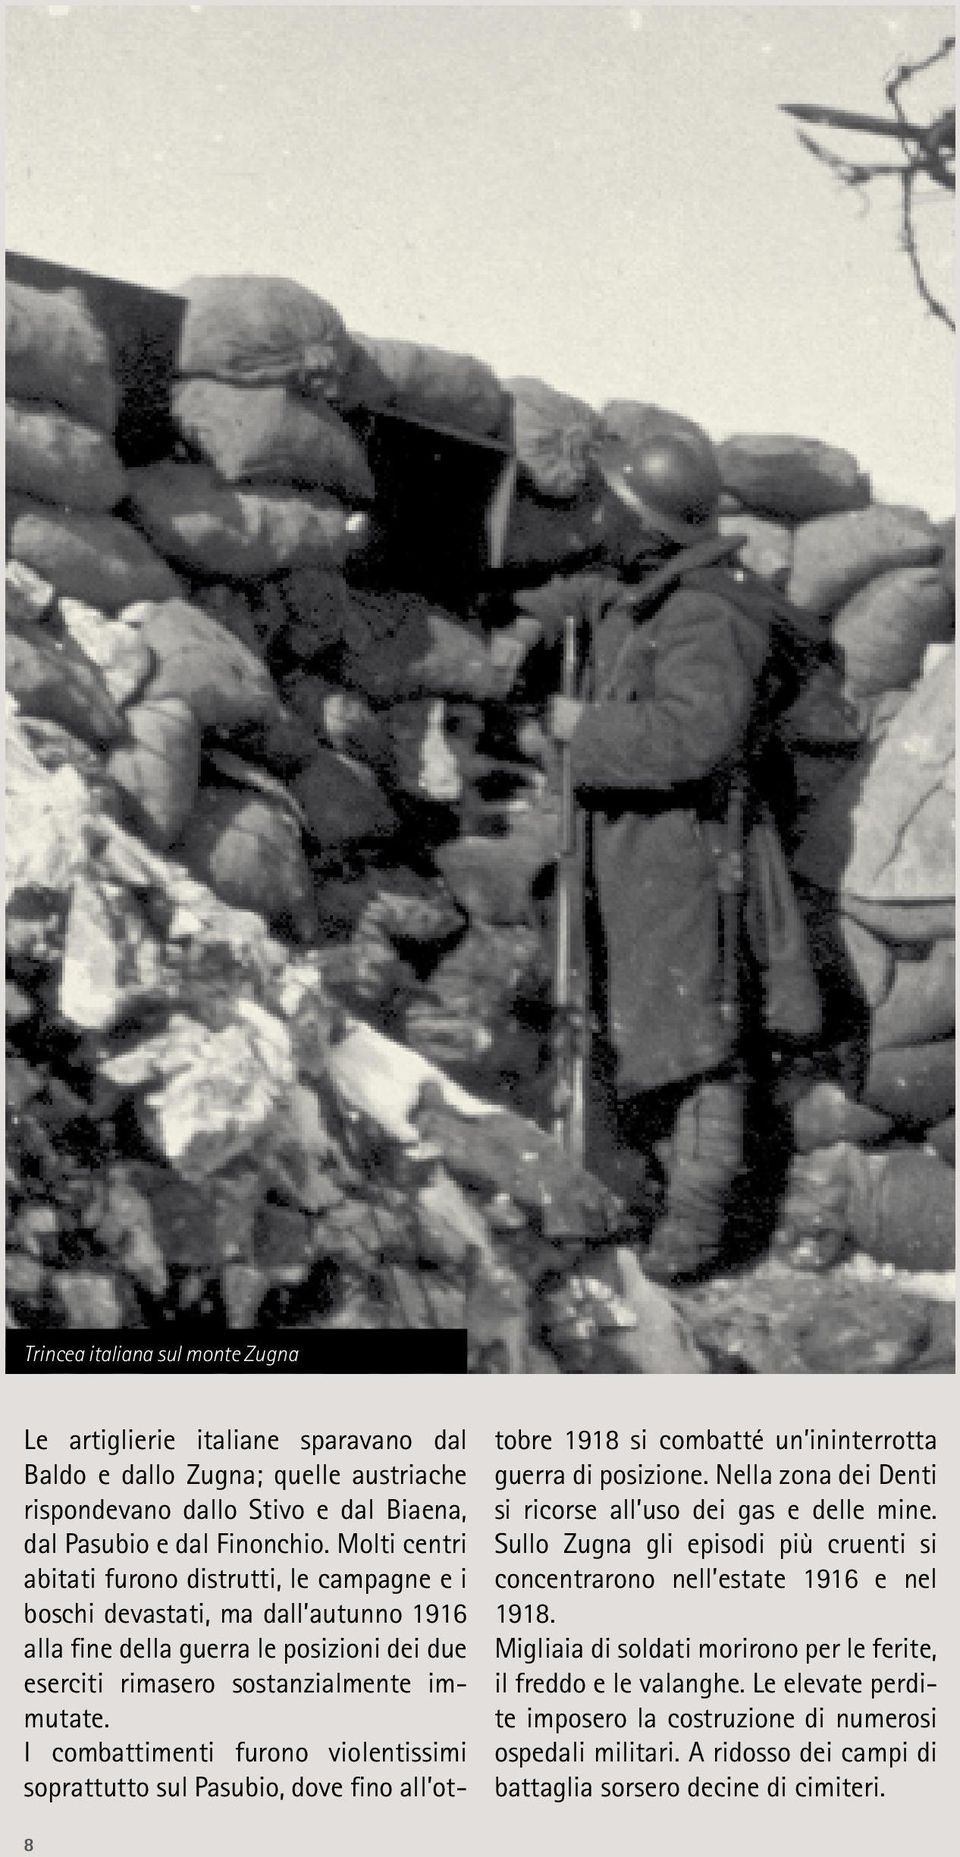 I combattimenti furono violentissimi soprattutto sul Pasubio, dove fino all ottobre 1918 si combatté un ininterrotta guerra di posizione. Nella zona dei Denti si ricorse all uso dei gas e delle mine.